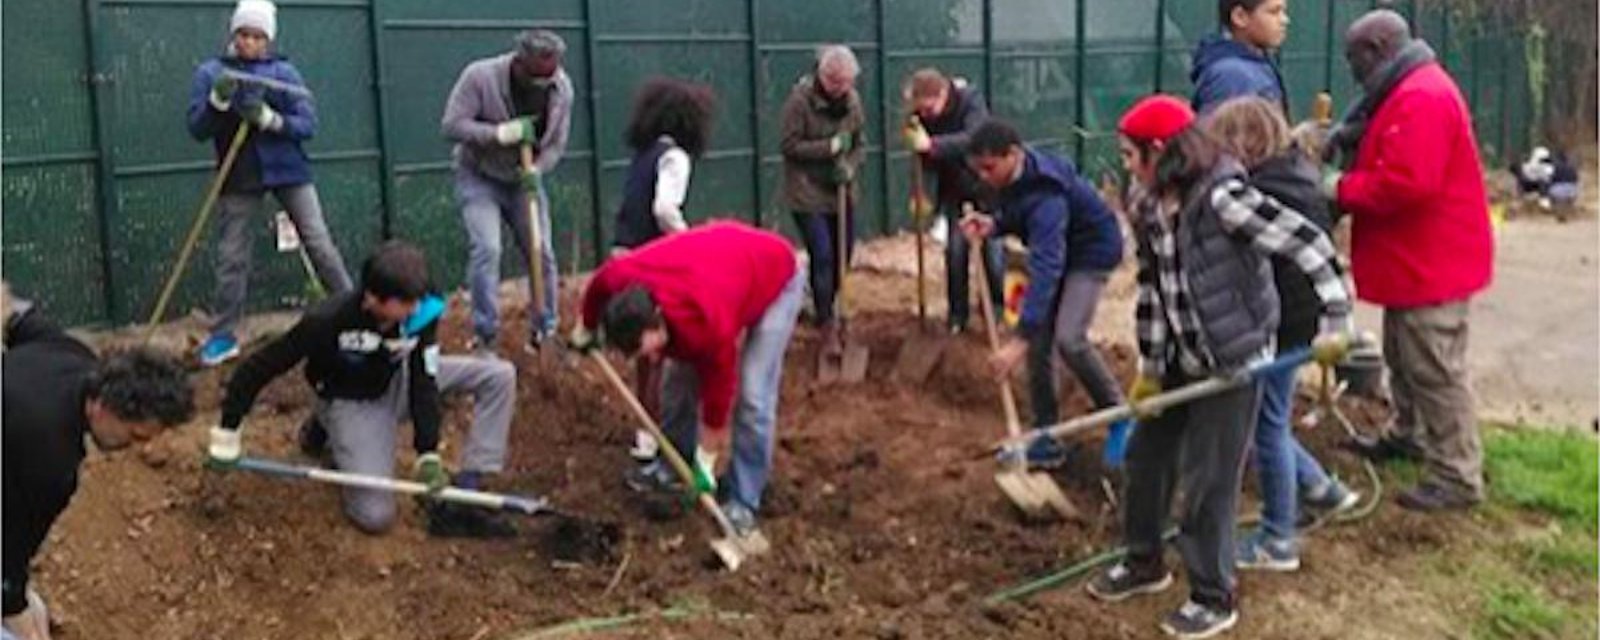 Un collège à Paris remplace les retenues par du jardinage